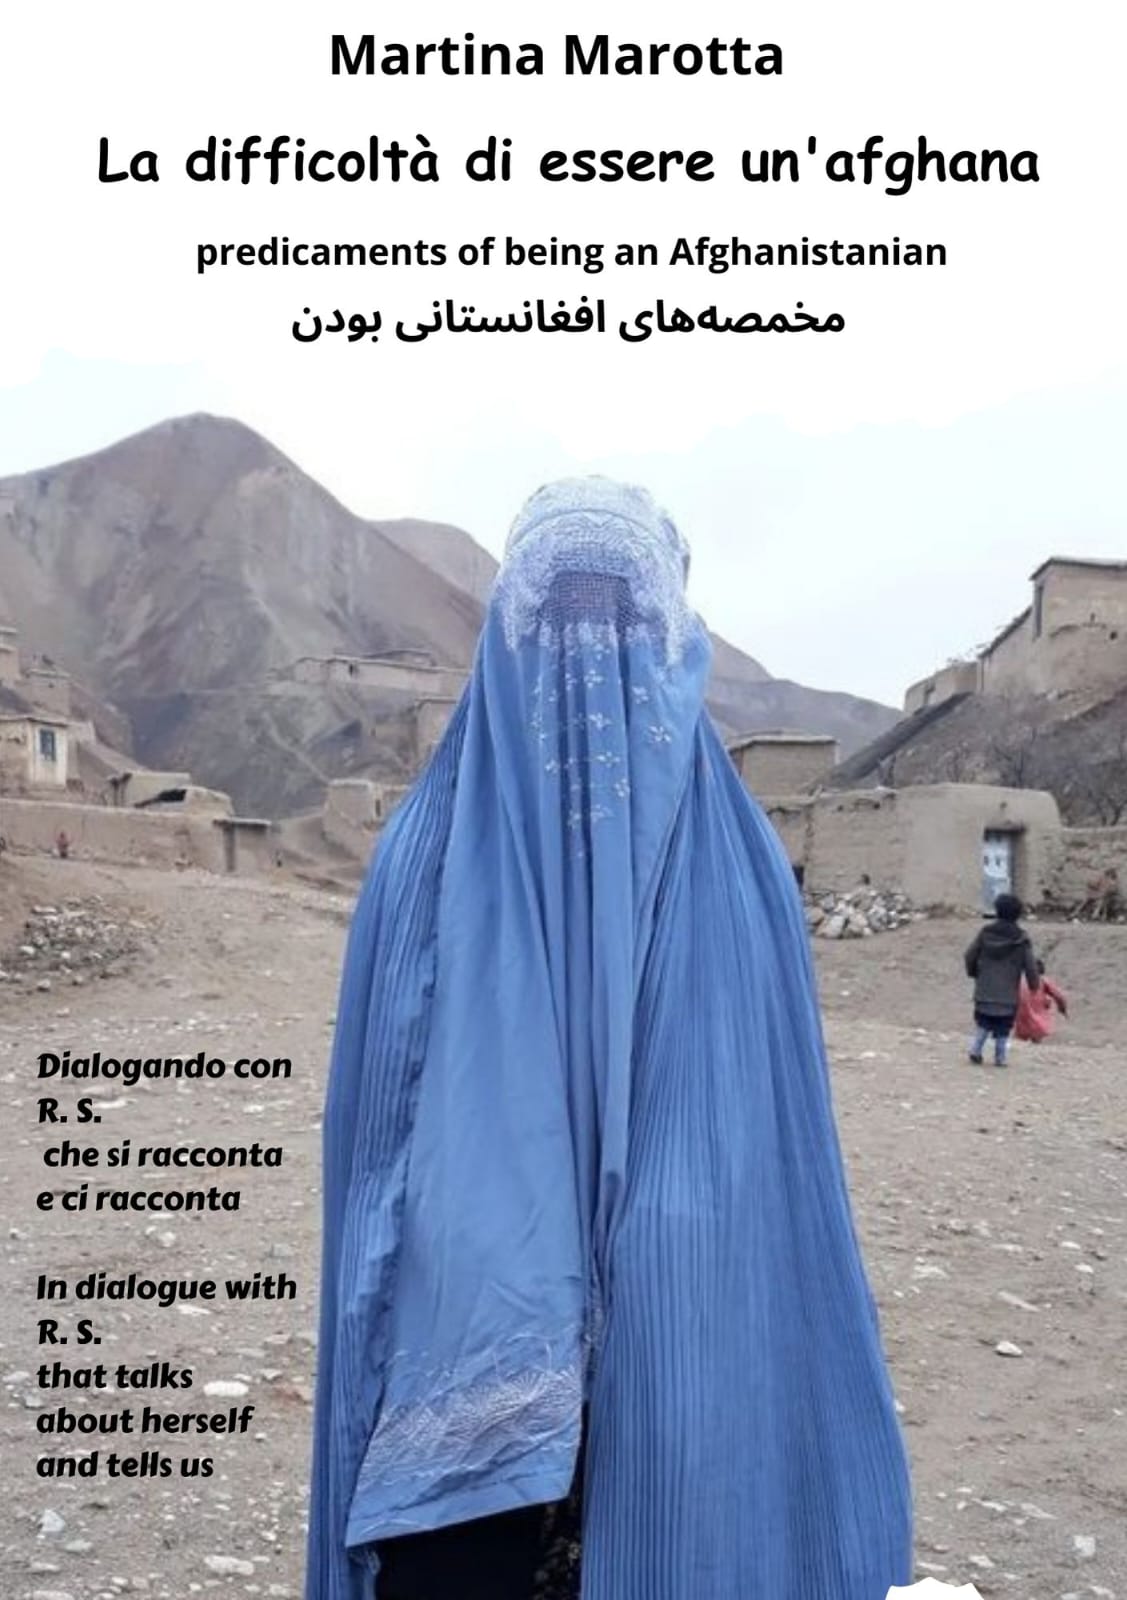 Un nuovo libro per Martina Marotta – “La difficoltà di essere un’afghana”